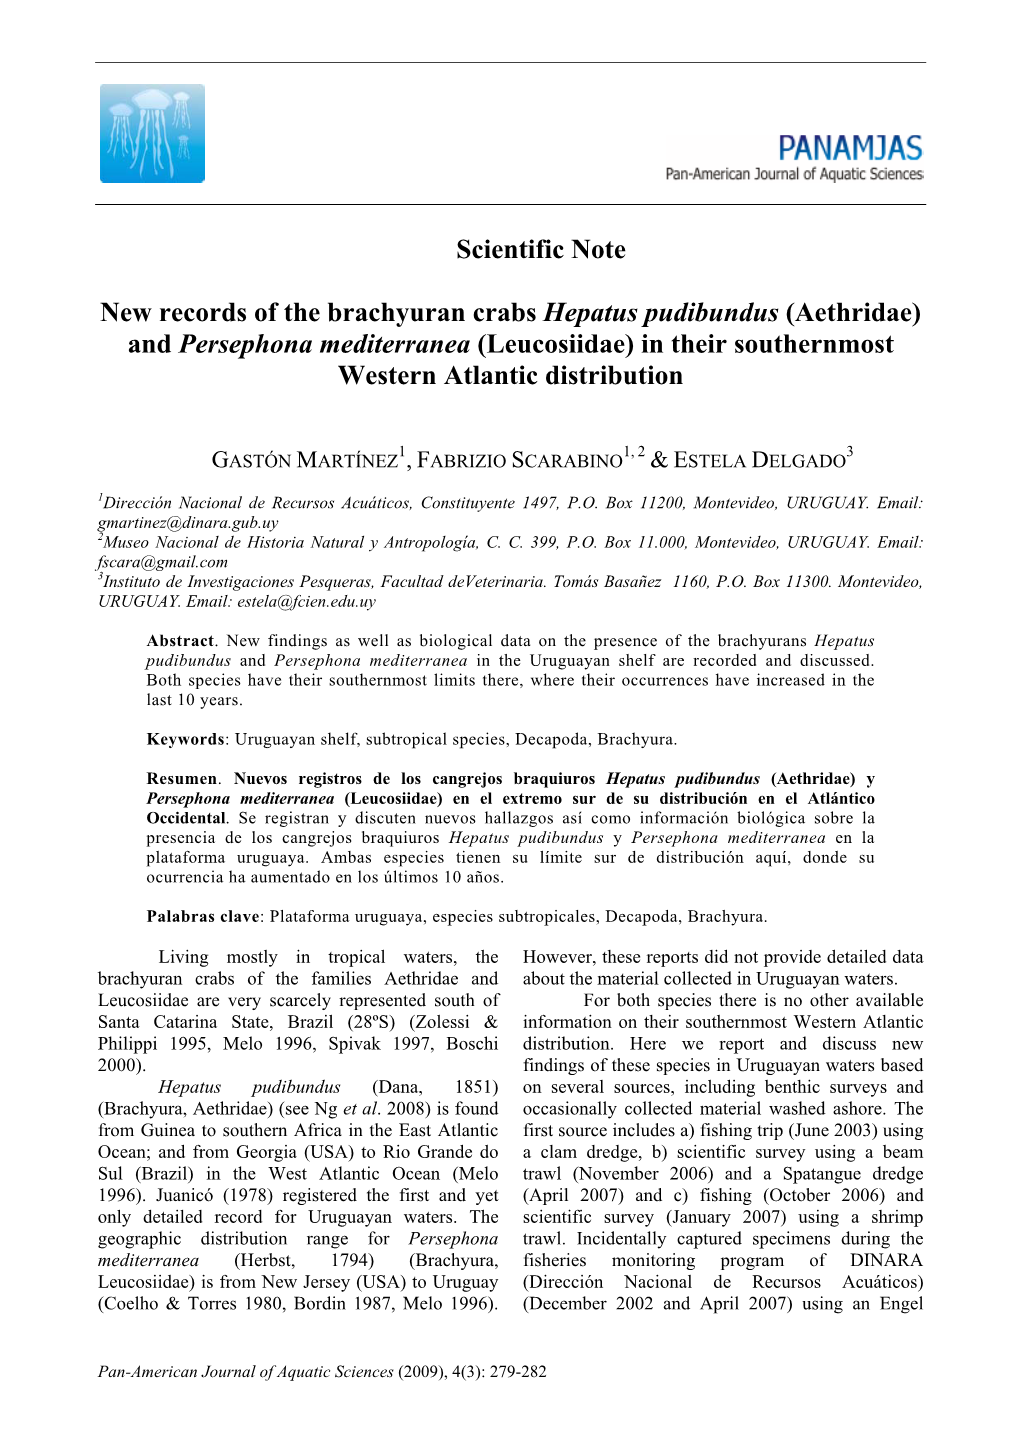 Scientific Note New Records of the Brachyuran Crabs Hepatus Pudibundus (Aethridae) and Persephona Mediterranea (Leucosiidae) In